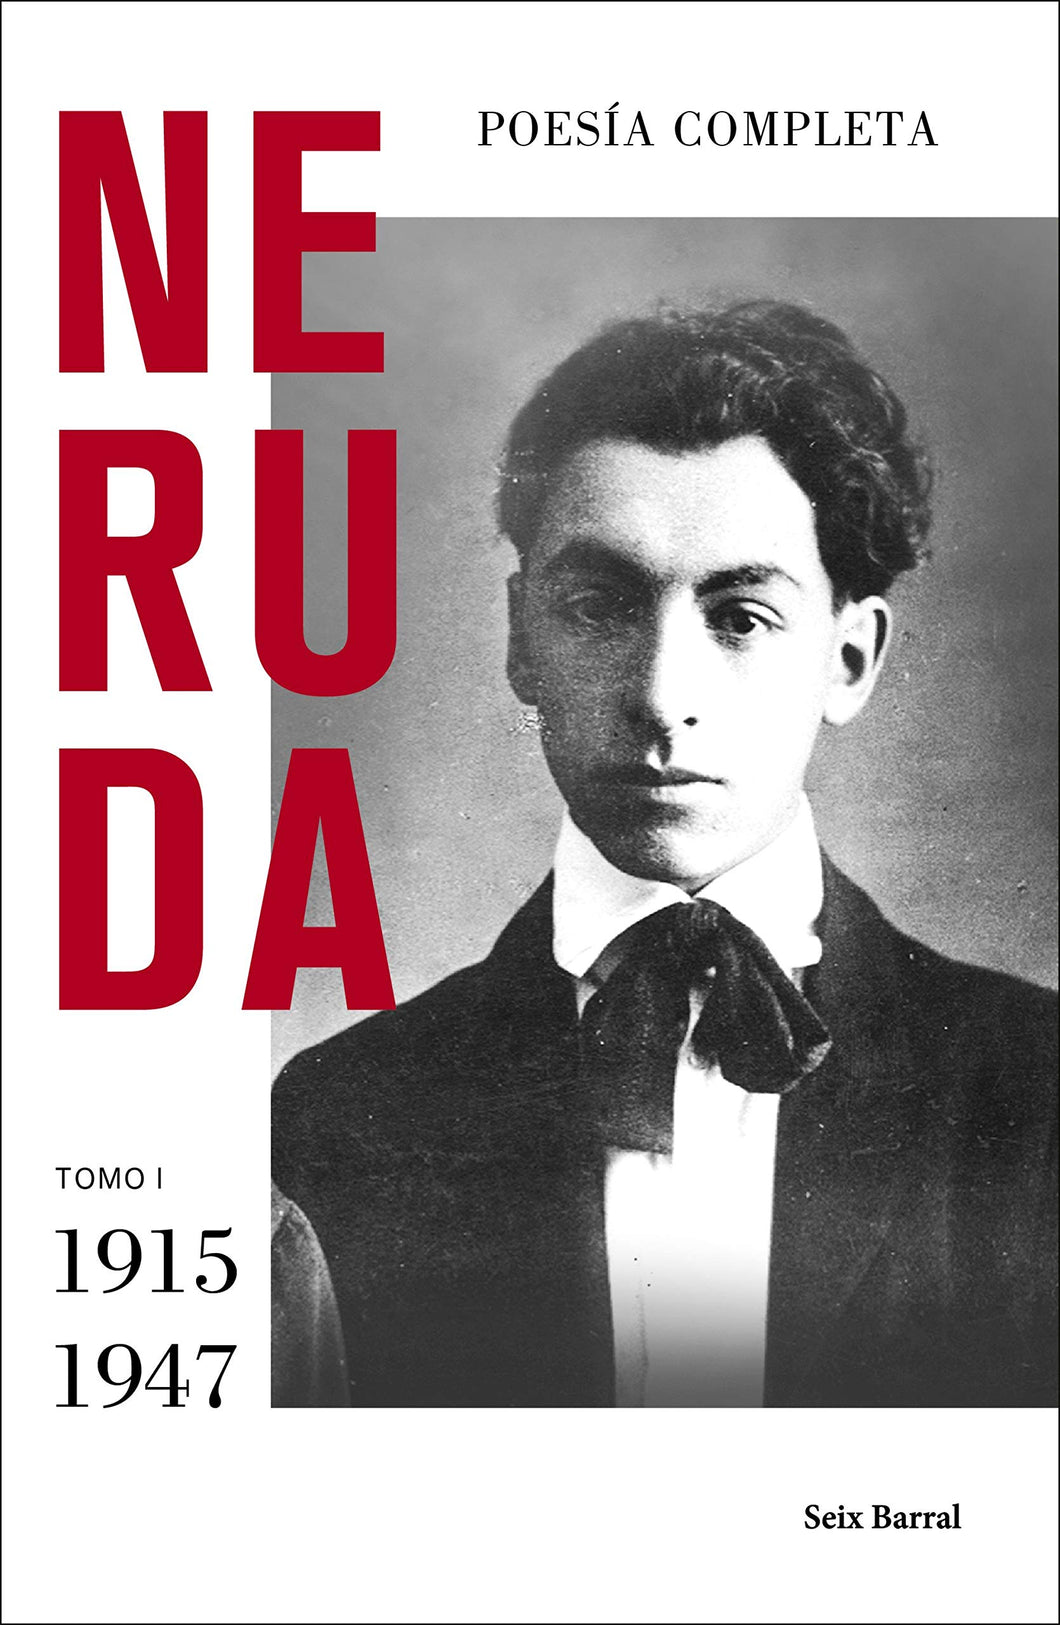 POESÍA COMPLETA TOMO I (1915 - 1947) - Pablo Neruda